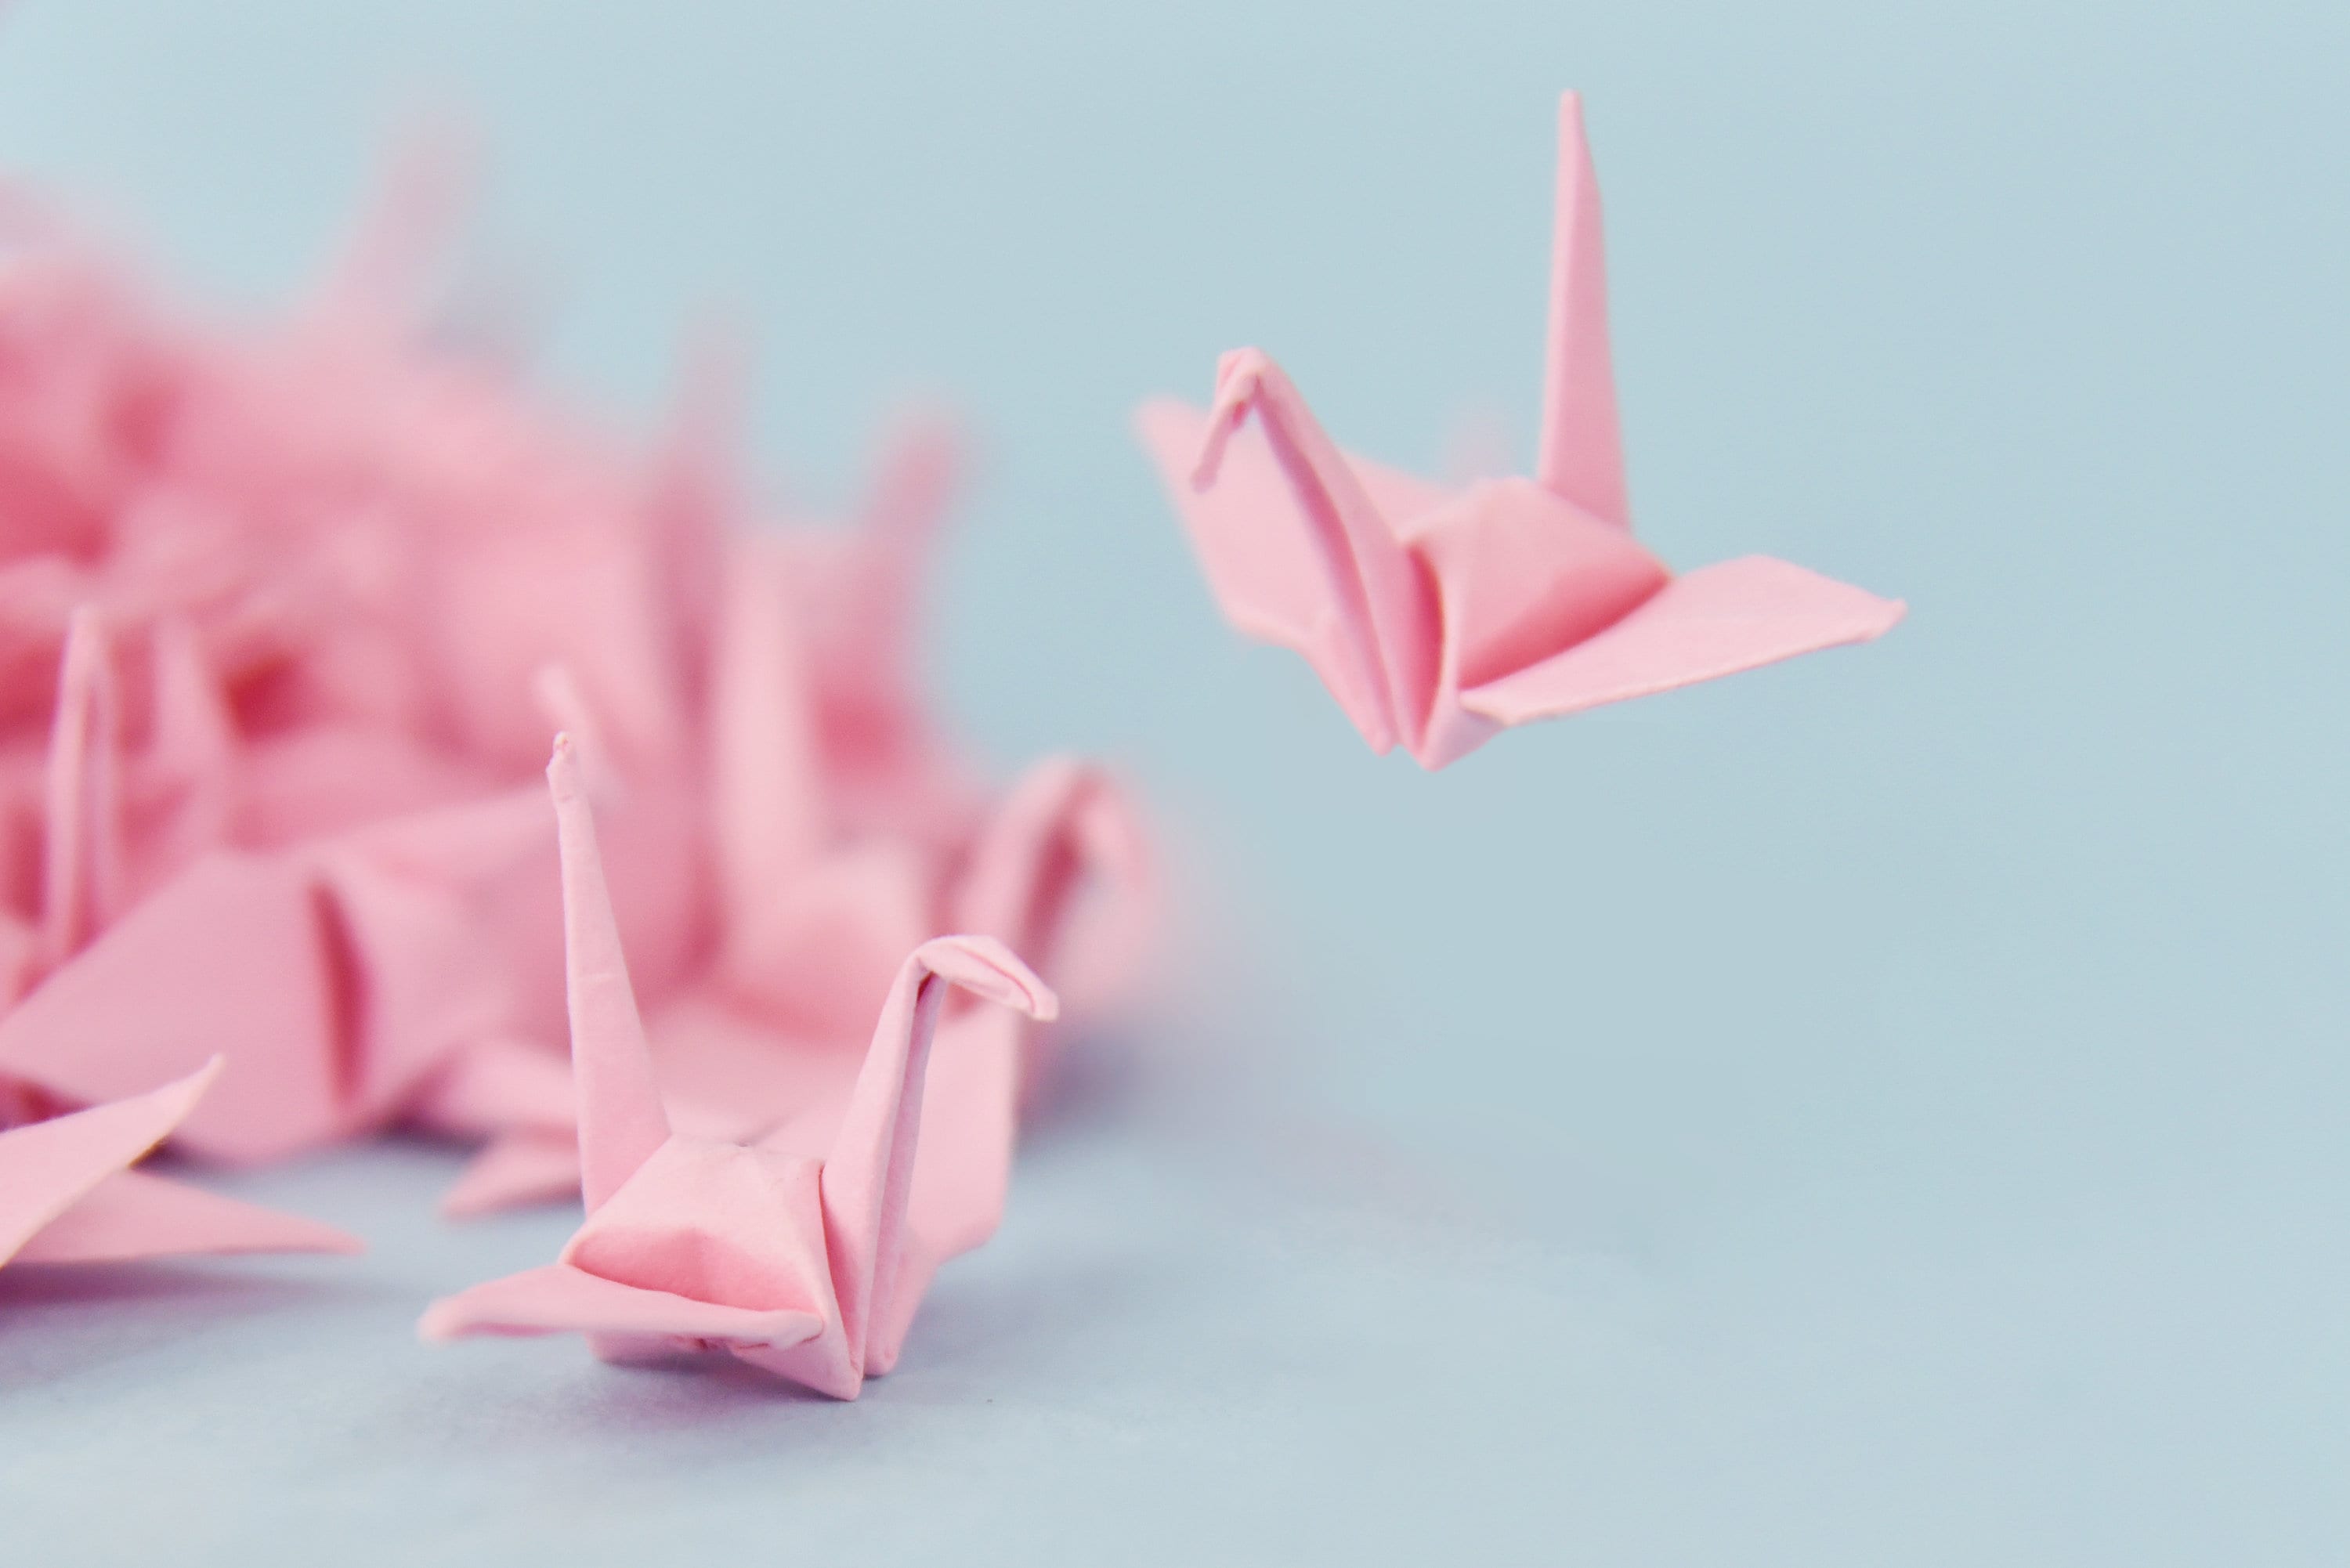 1000 gru di carta origami gru origami rosa pre realizzate piccole 1,5x1,5 pollici per decorazioni di nozze, regali di anniversario, San Valentino